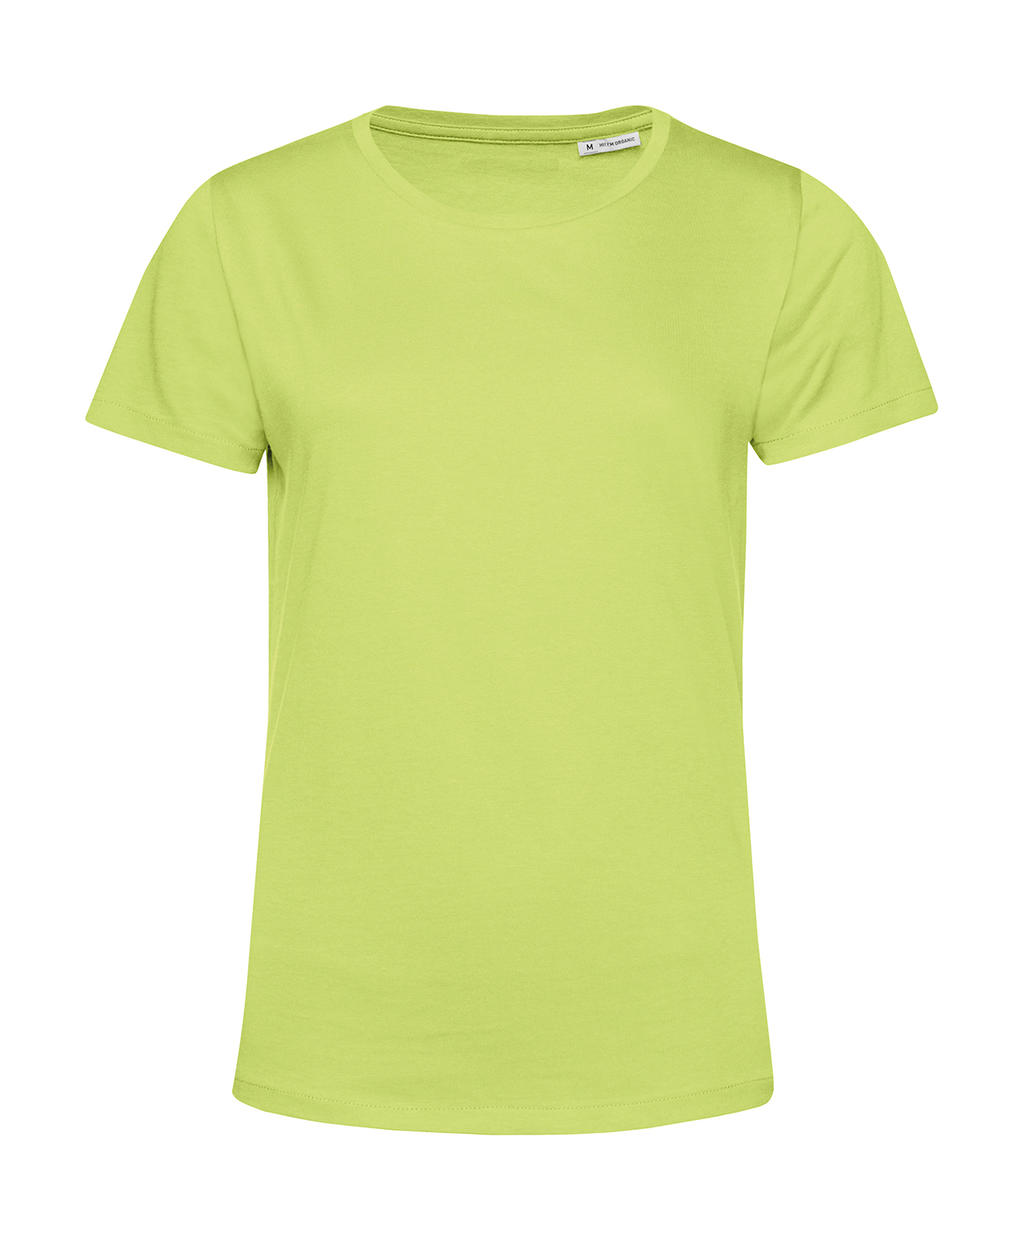 Tričko dámské BC Organic Inspire E150 - světle zelené, XS